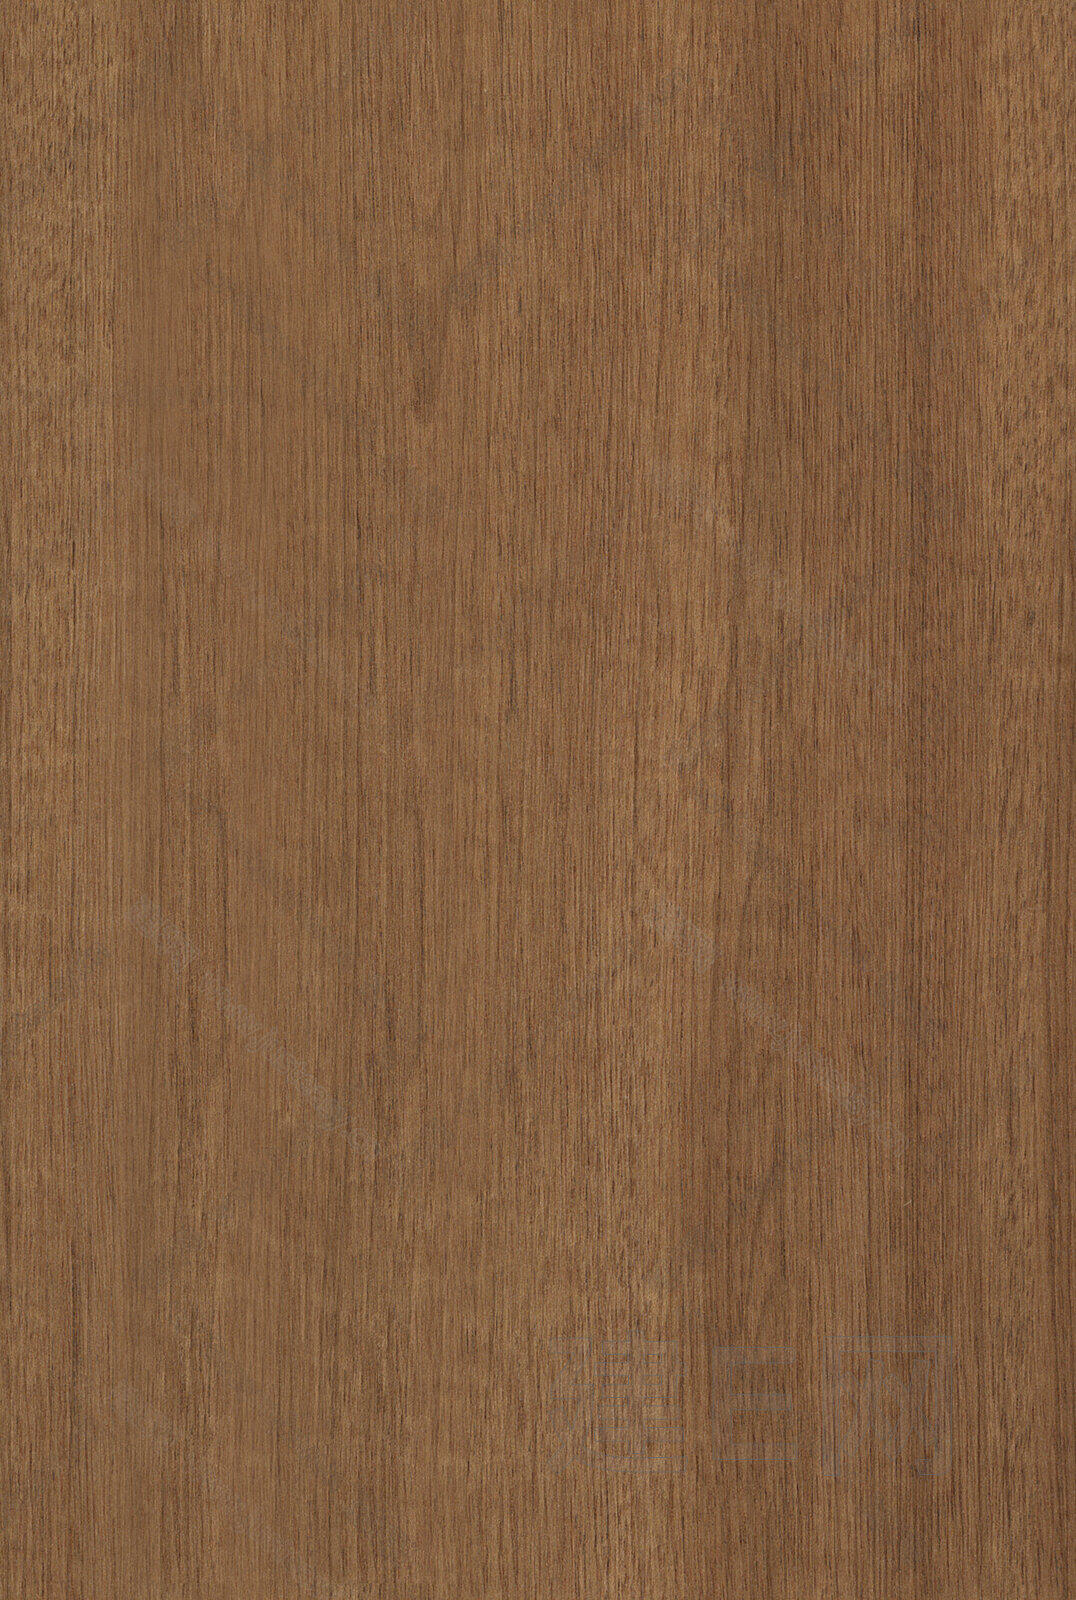 棕色木纹木饰面高清贴图